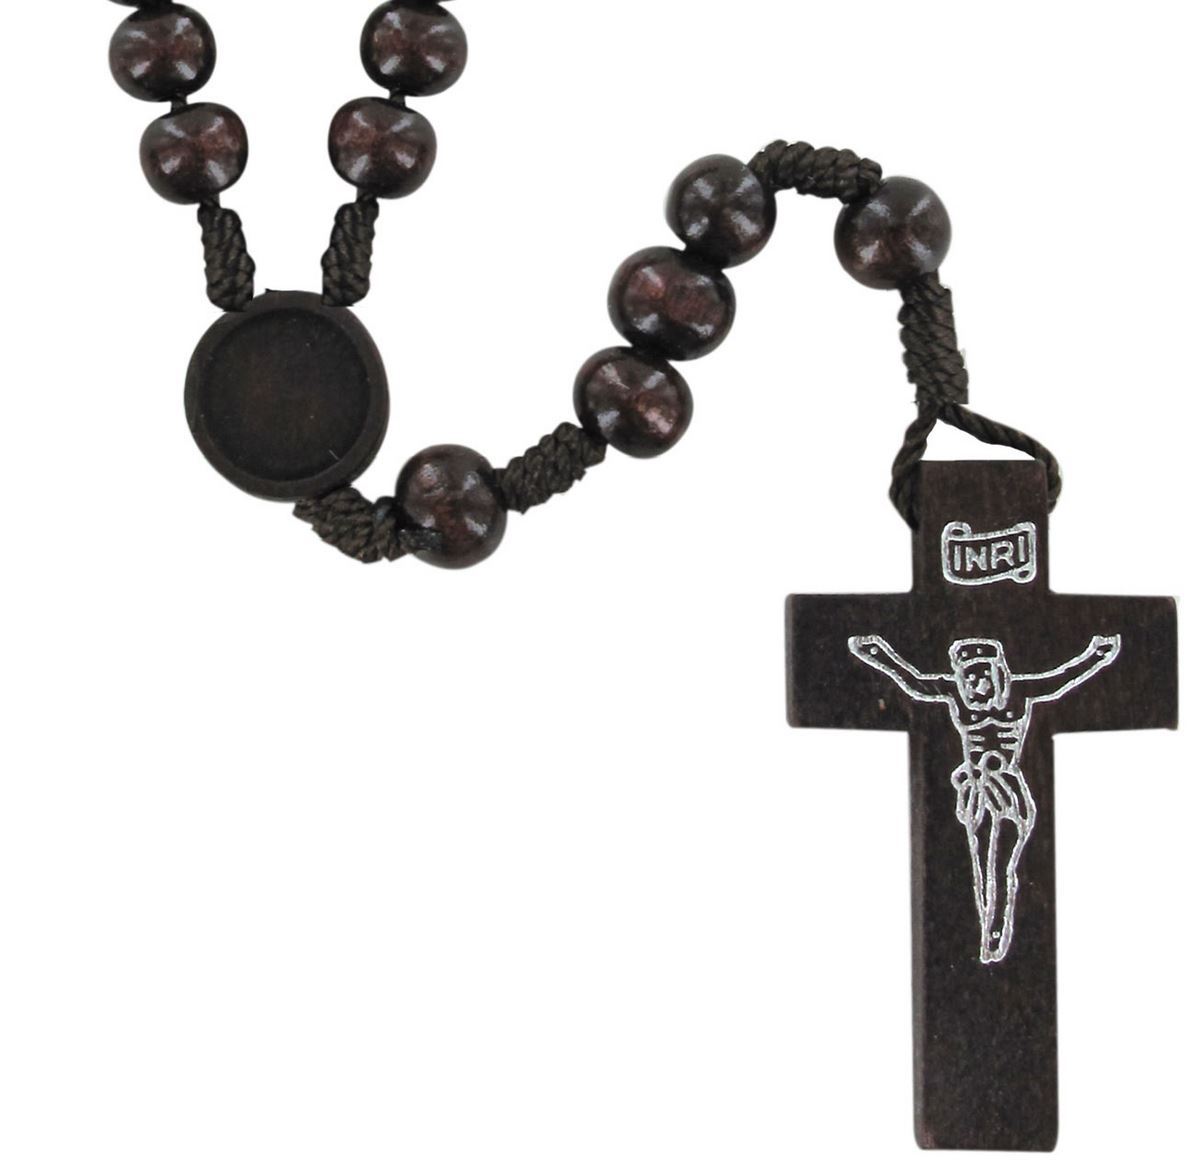 rosario in legno colore palissandro mm 8 con moschettone